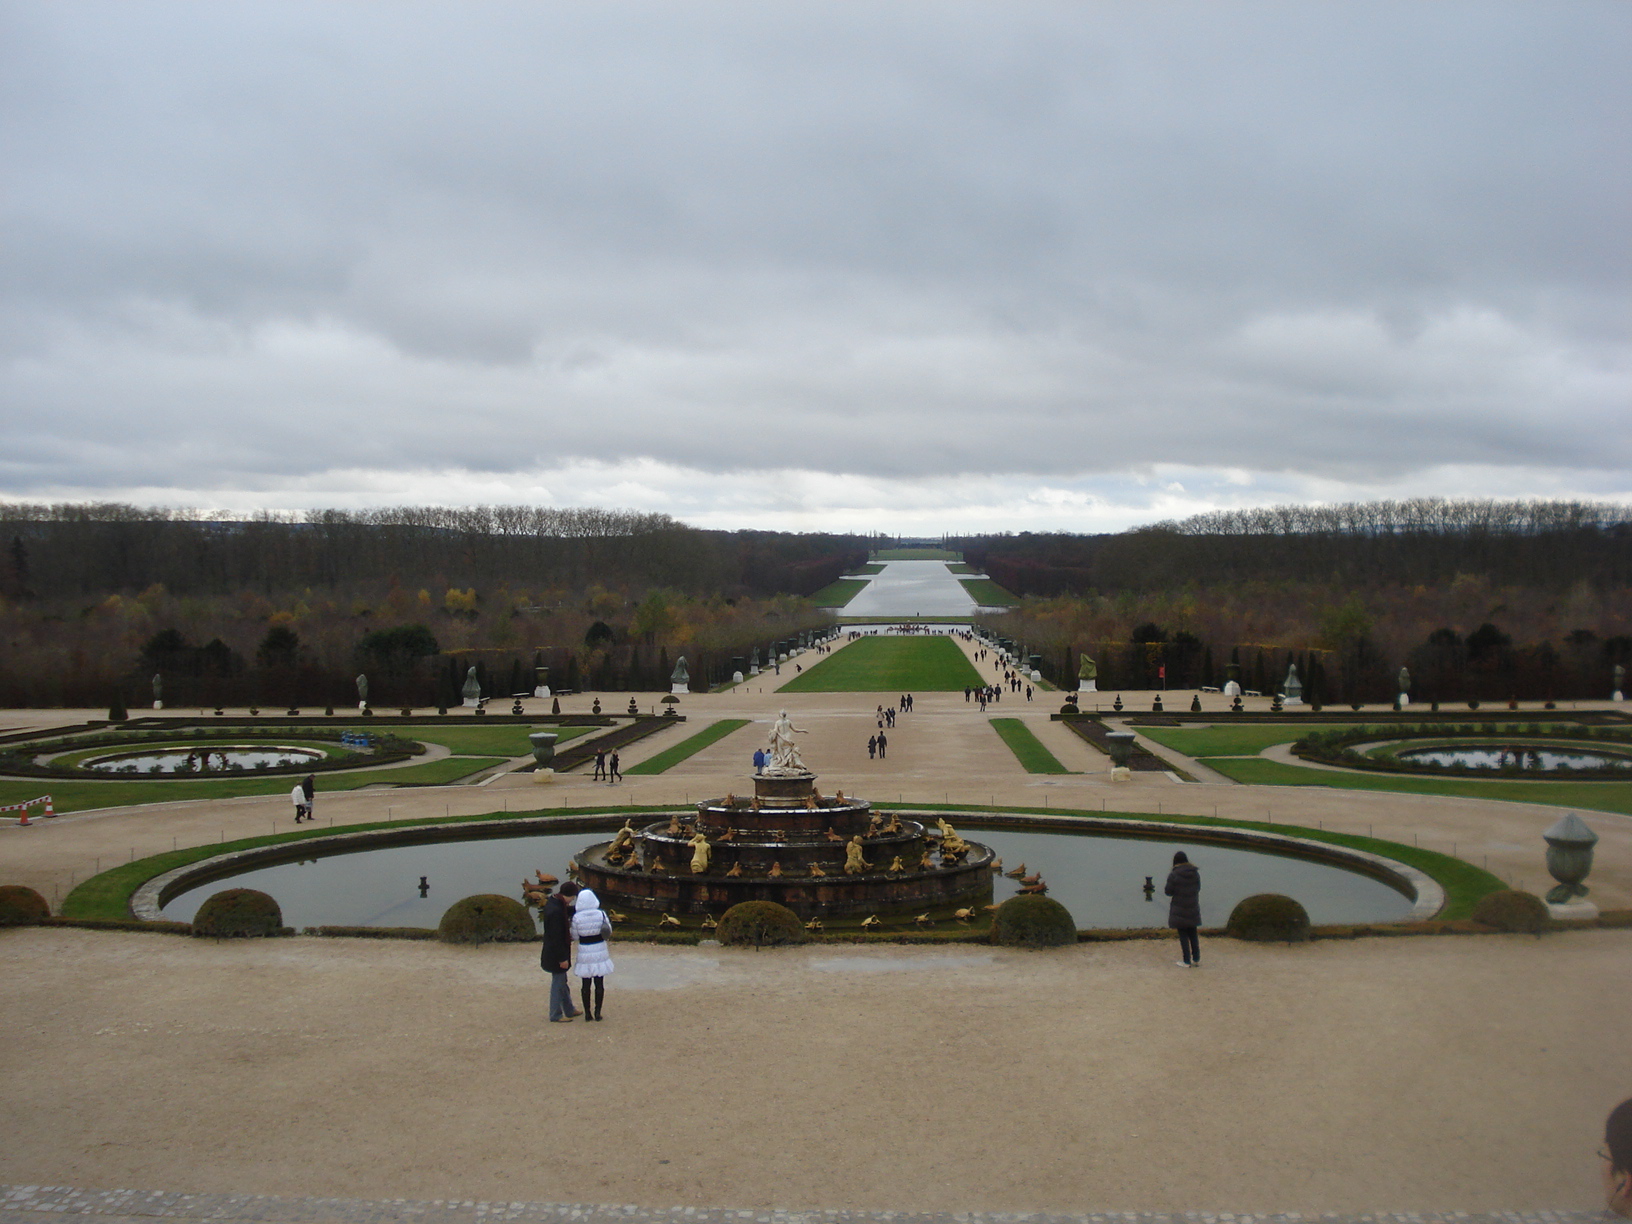 Os Jardins do Palacio de Versailles, França